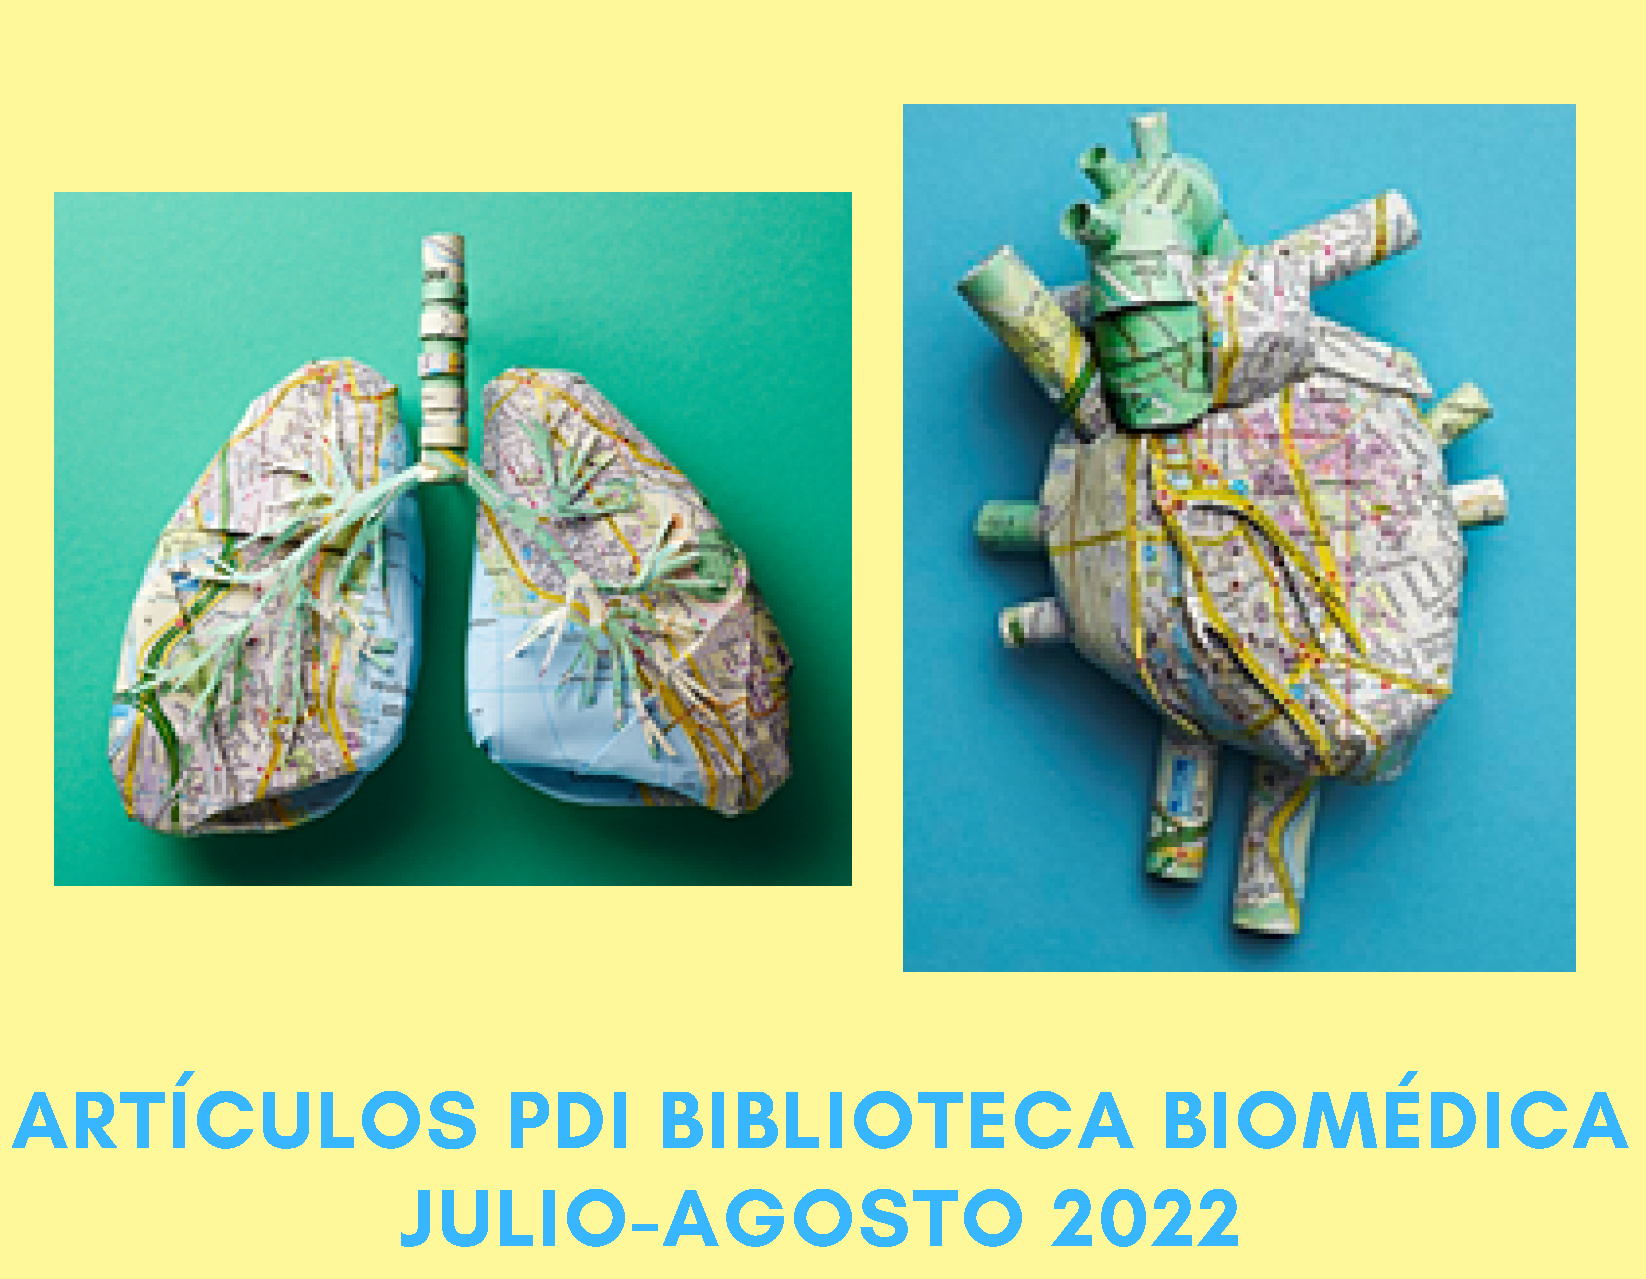 art pdi biomedica julio-agosto 2022